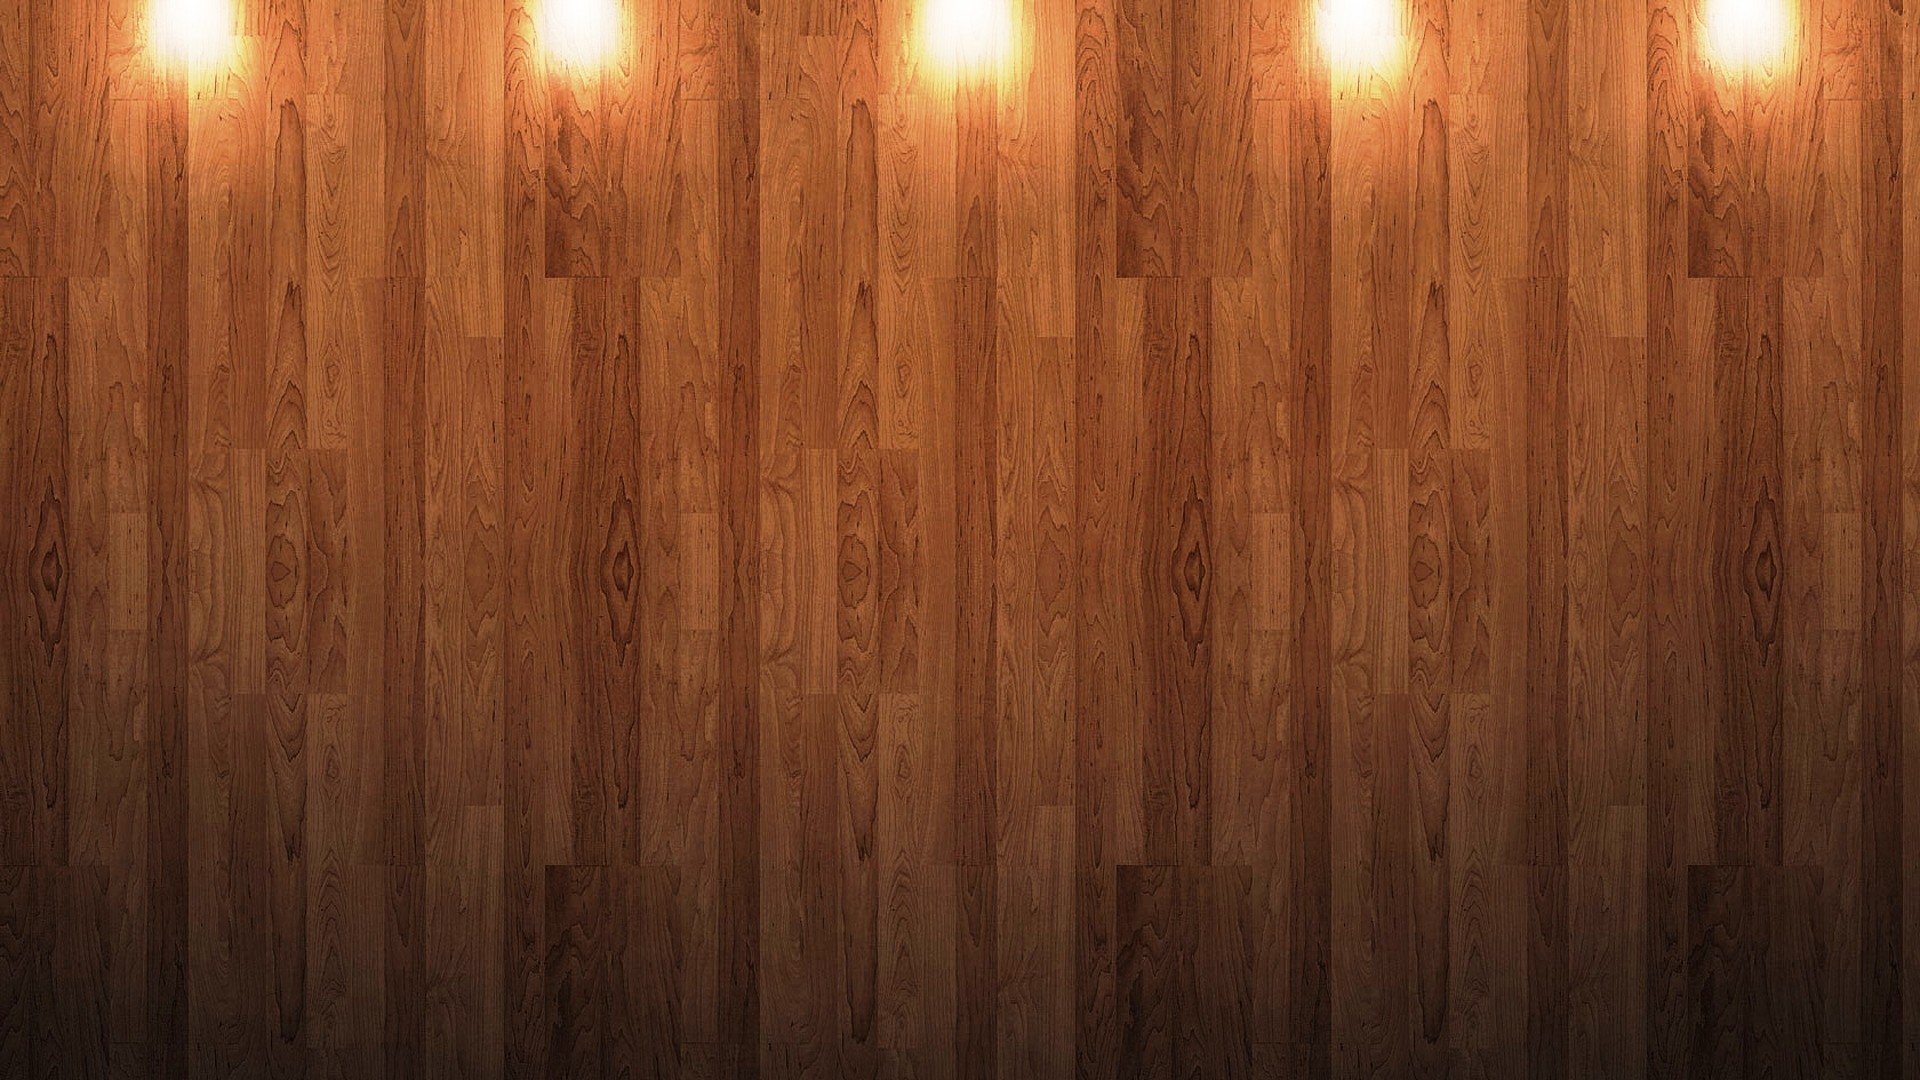 Hình nền gỗ đẹp mang lại một cái nhìn mới mẻ cho căn phòng của bạn. Nó sẽ giúp tôn lên vẻ đẹp cho không gian sống, từ đó giúp bạn cảm thấy thoải mái và thoải mái hơn trong những lúc nghỉ ngơi. Hãy đến để thưởng thức những mẫu hình nền gỗ đẹp nhất với nhiều phong cách và màu sắc khác nhau.